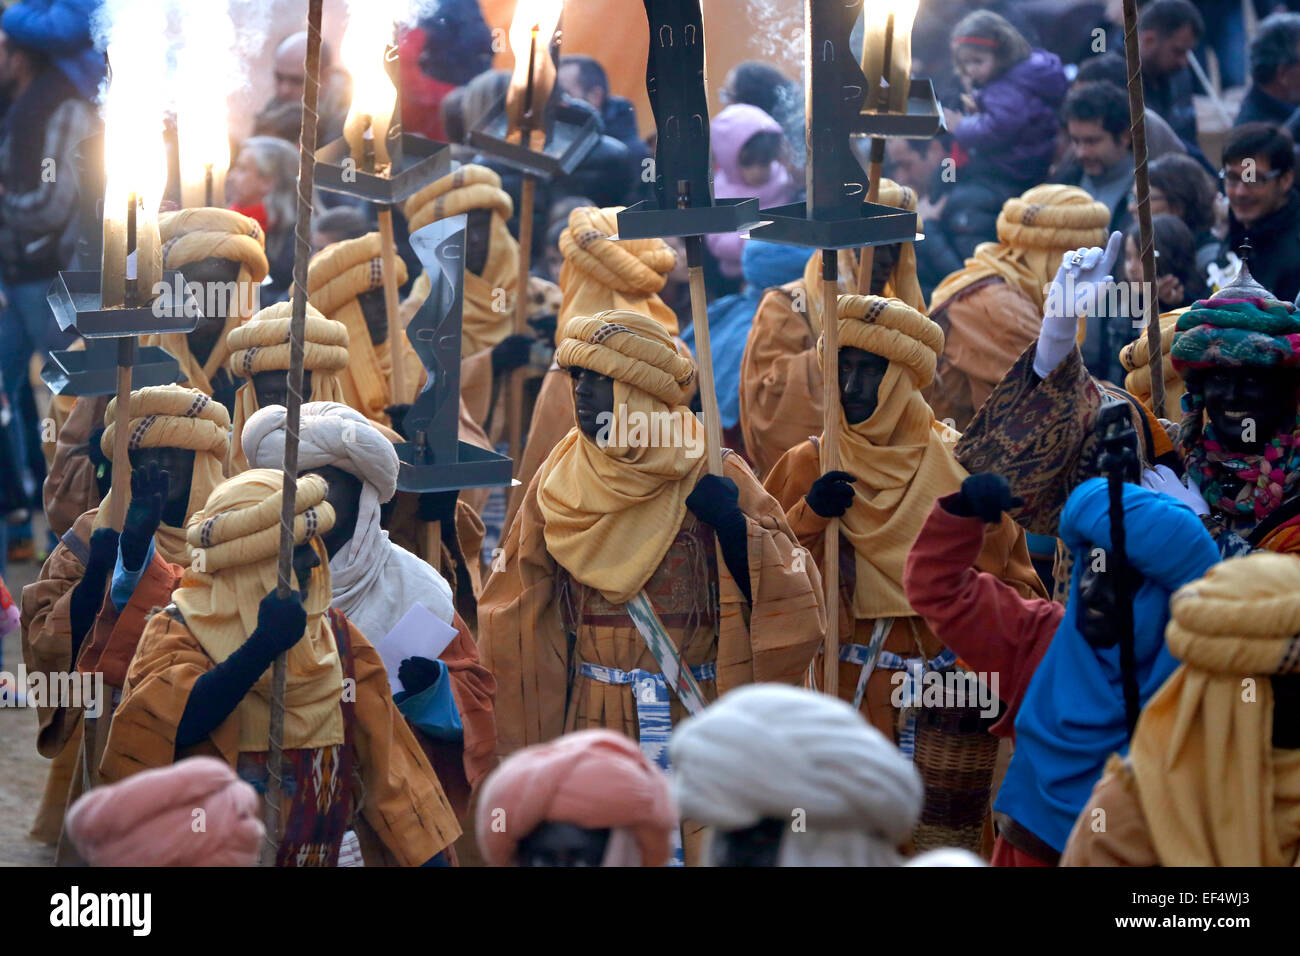 Menschen als Araber verkleidet, während die Heiligen drei Könige Dreikönigsfest Prozession in Spanien Stockfoto